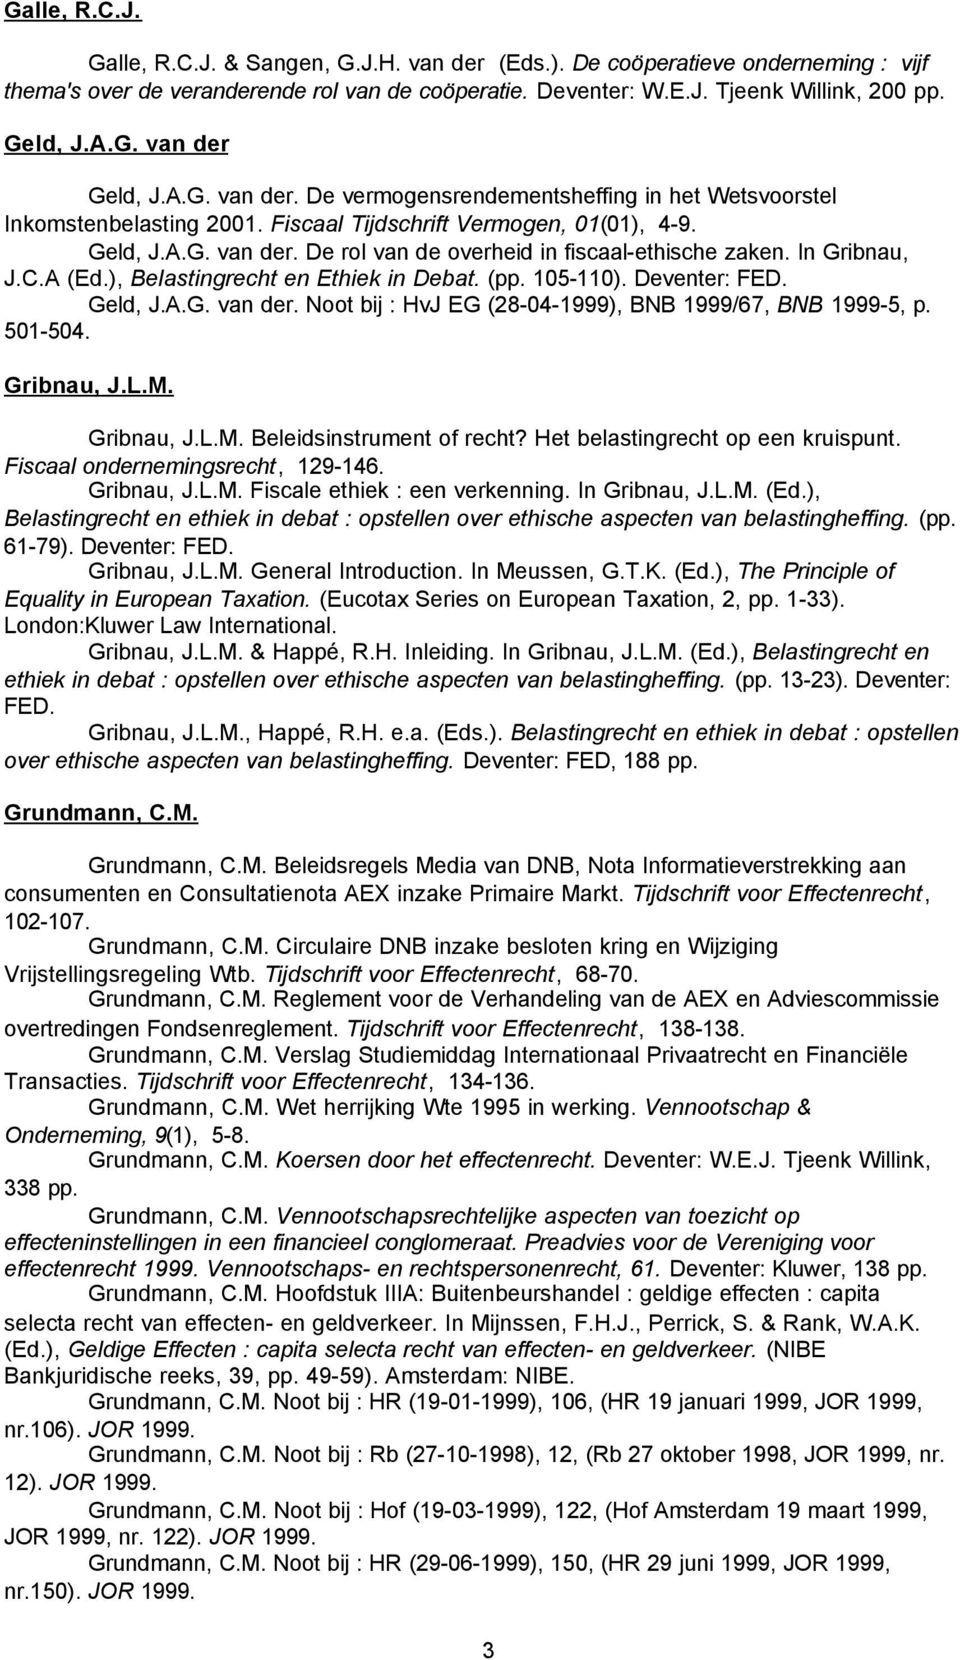 In Gribnau, J.C.A (Ed.), Belastingrecht en Ethiek in Debat. (pp. 105-110). Deventer: FED. Geld, J.A.G. van der. Noot bij : HvJ EG (28-04-1999), BNB 1999/67, BNB 1999-5, p. 501-504. Gribnau, J.L.M.